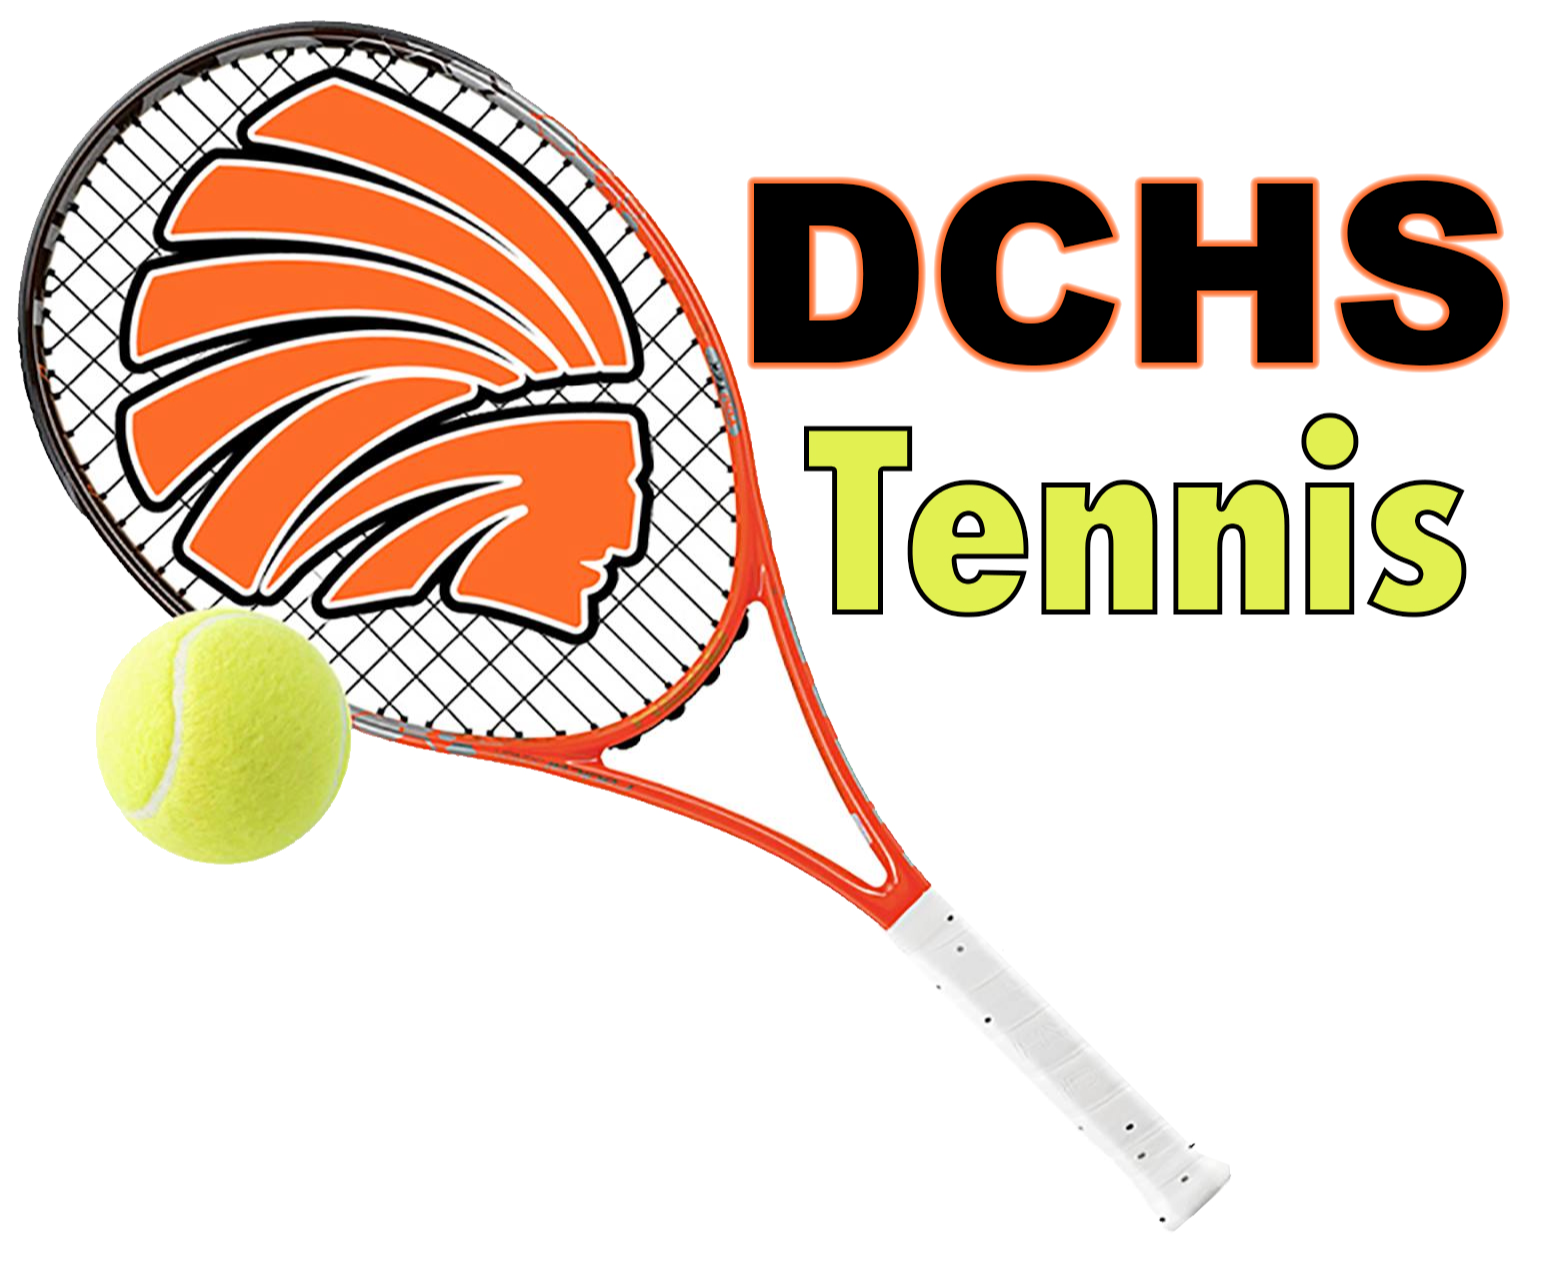 DCHS Tennis